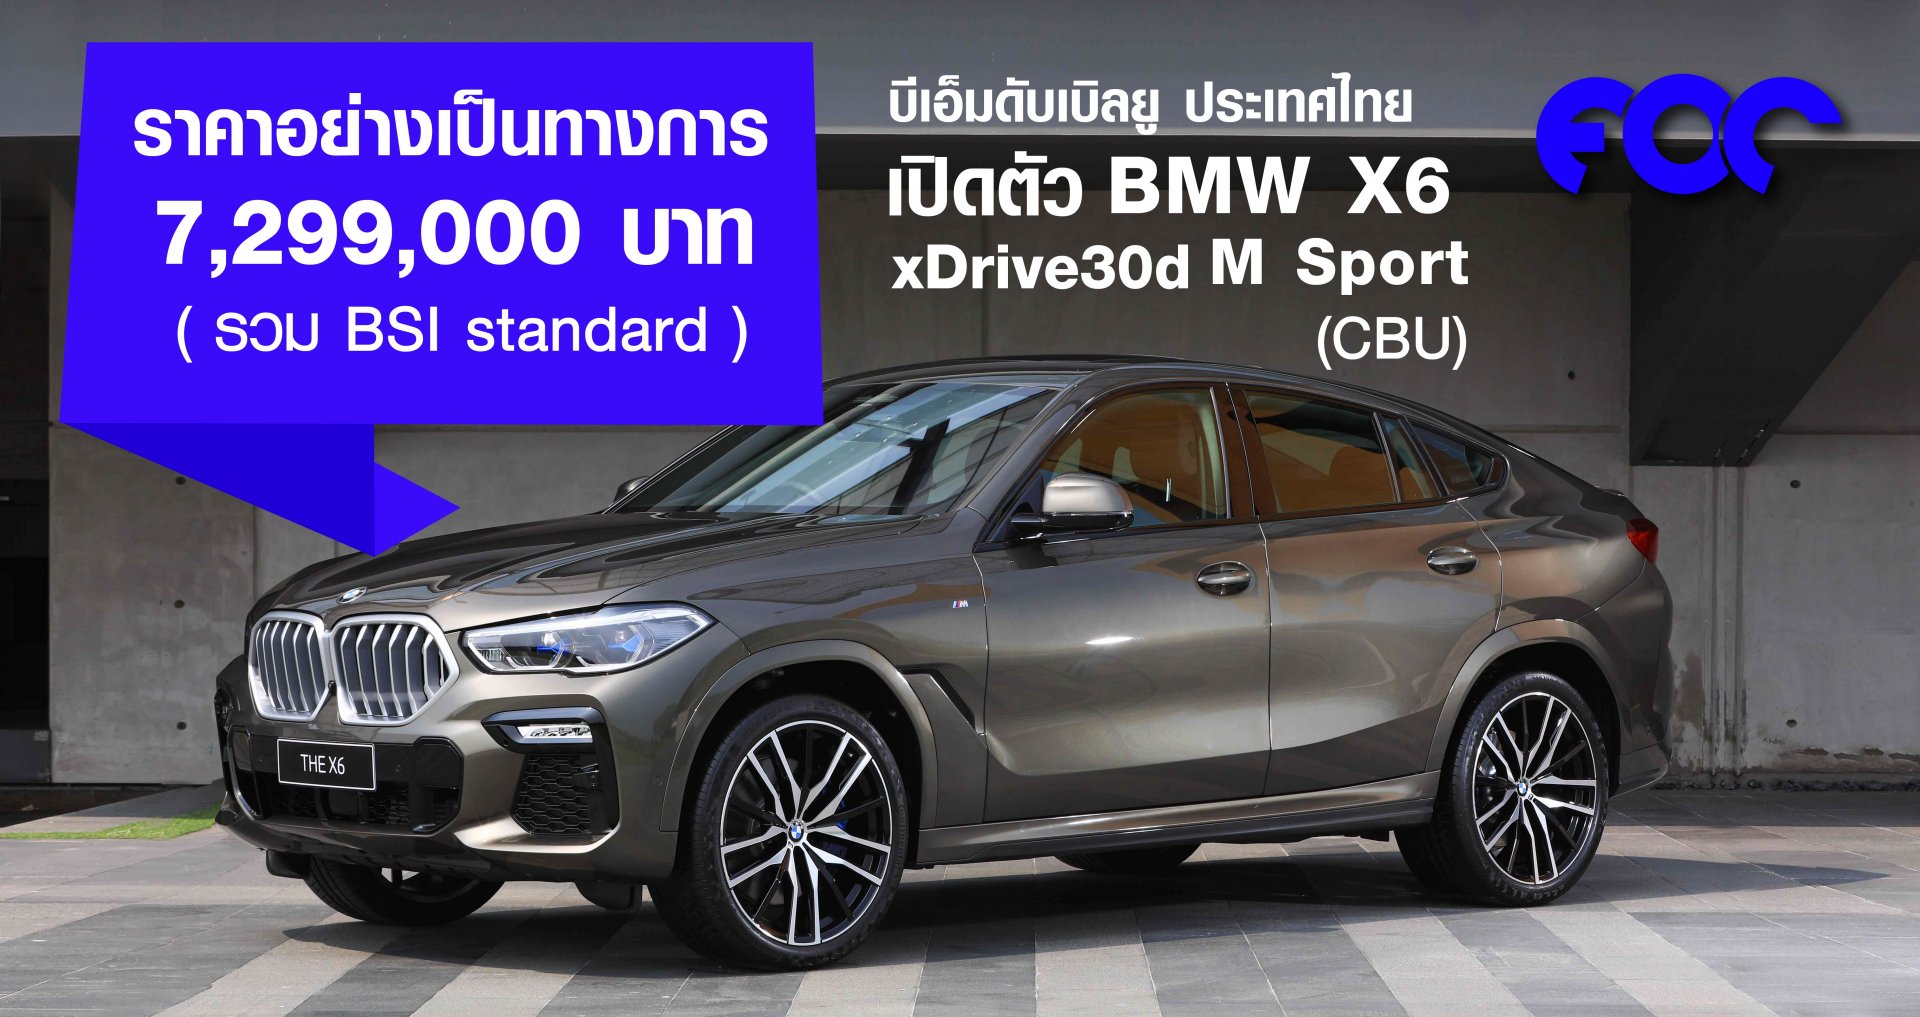 บีเอ็มดับเบิลยู ประเทศไทย เปิดตัว BMW X6 xDrive30d M Sport (CBU) ราคา 7,299,000 บาท รวม BSI standard